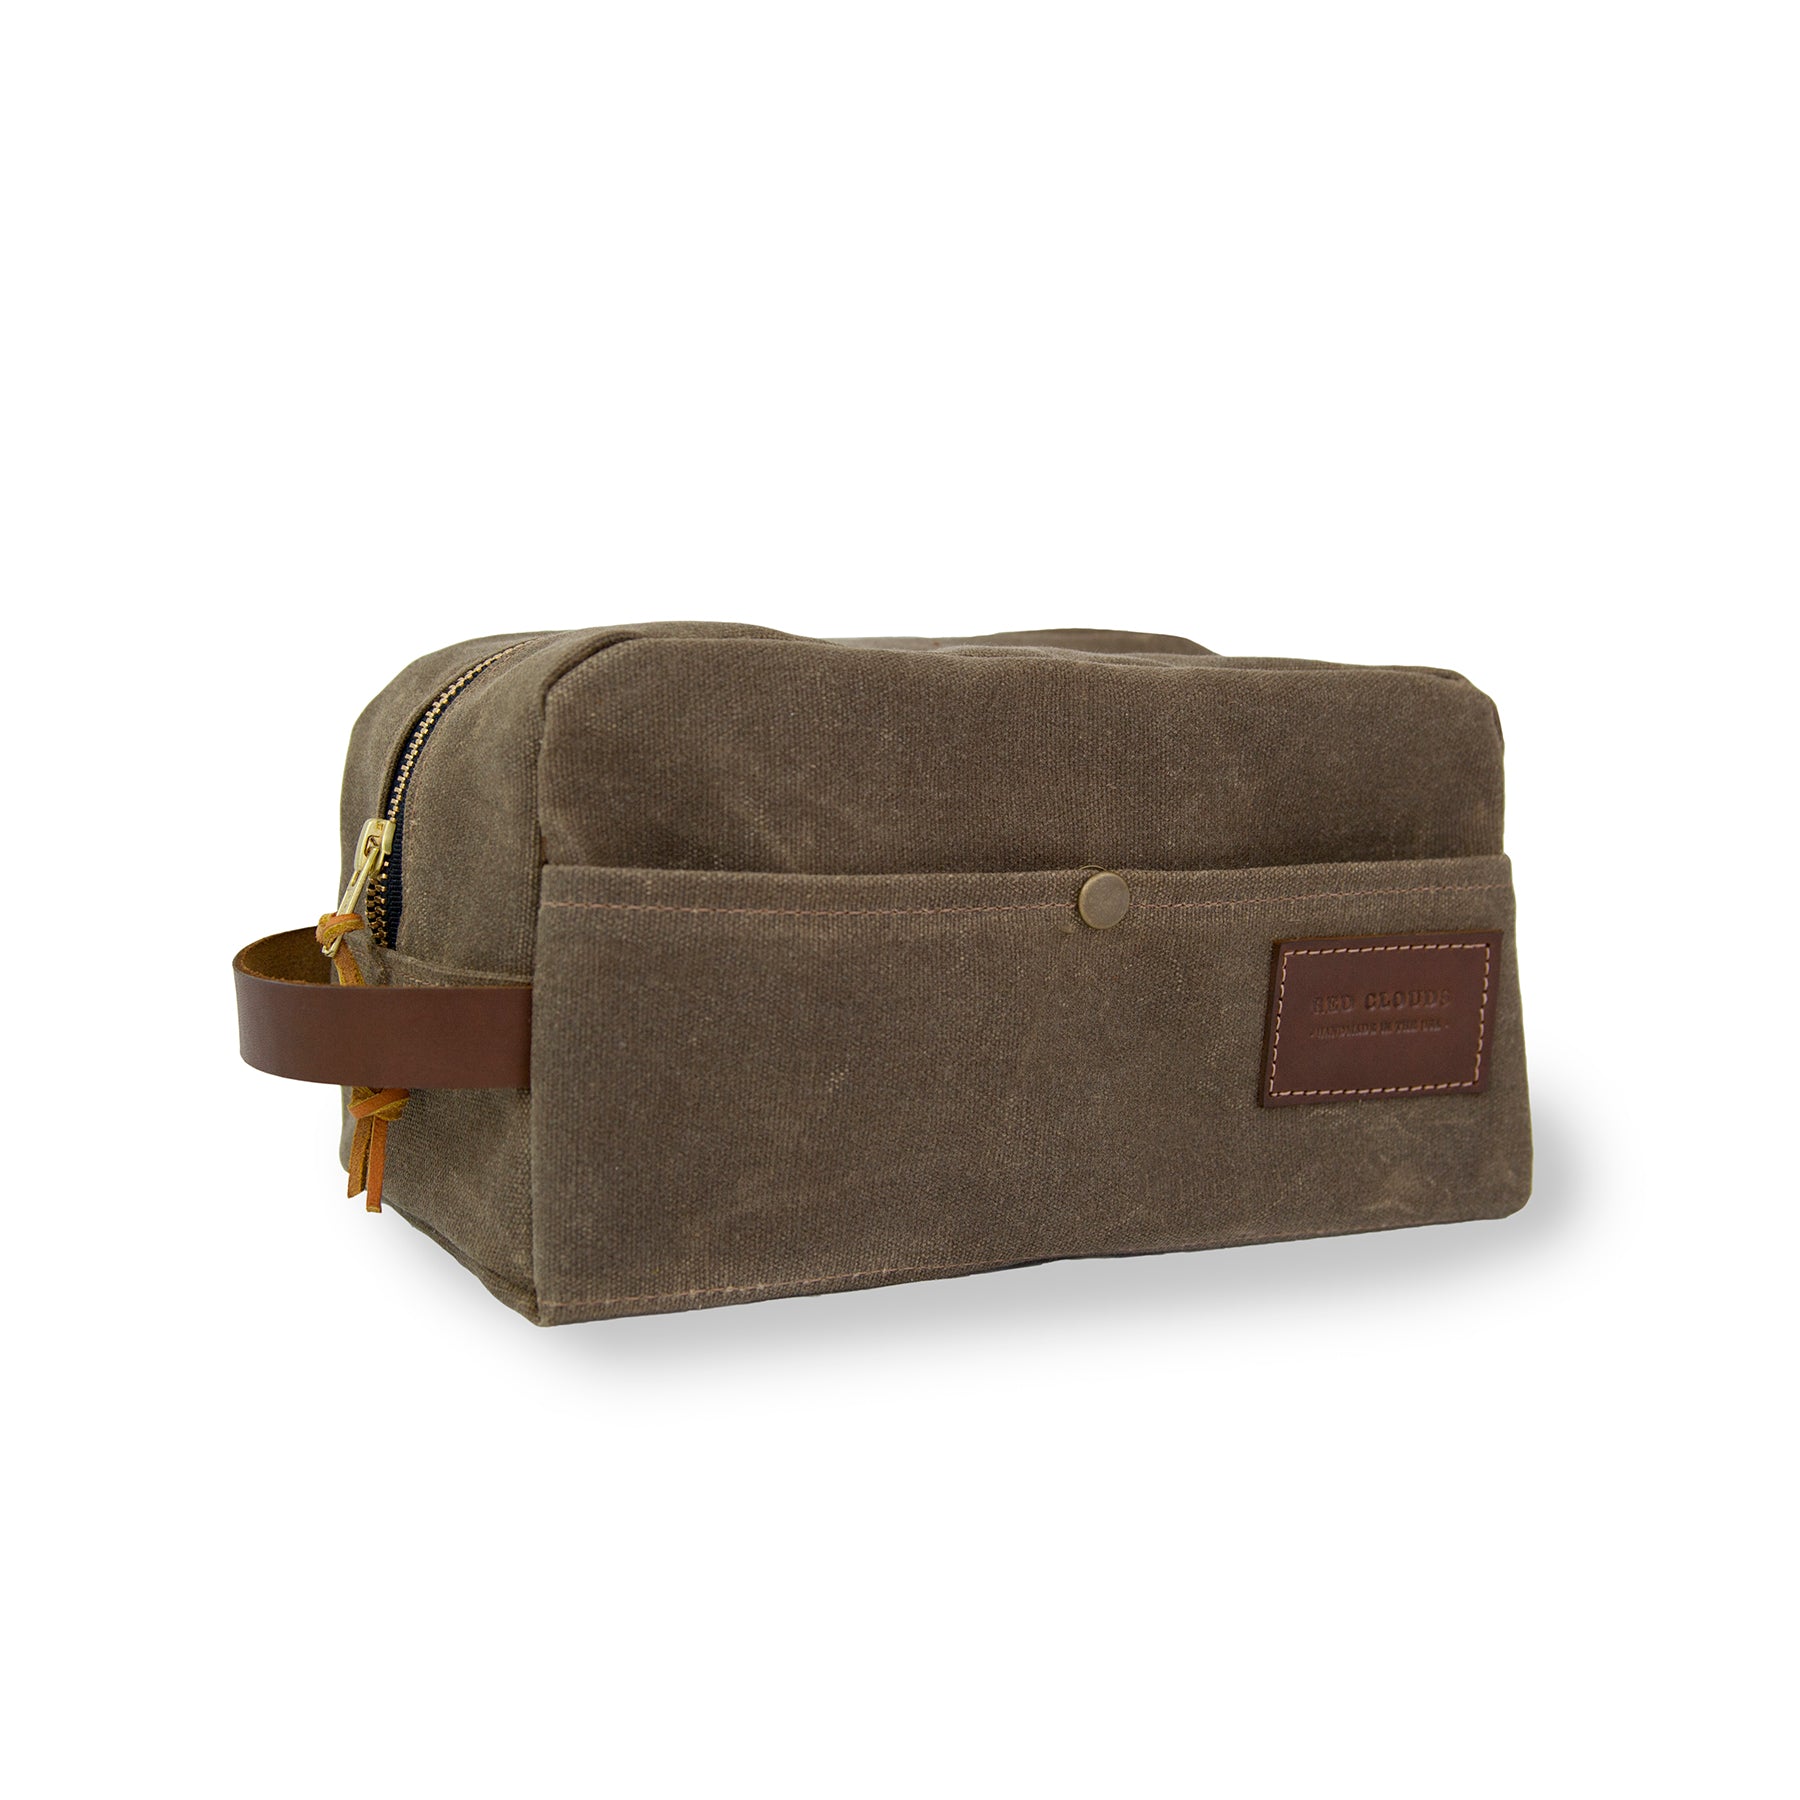 Dopp Kit cloth travel bag